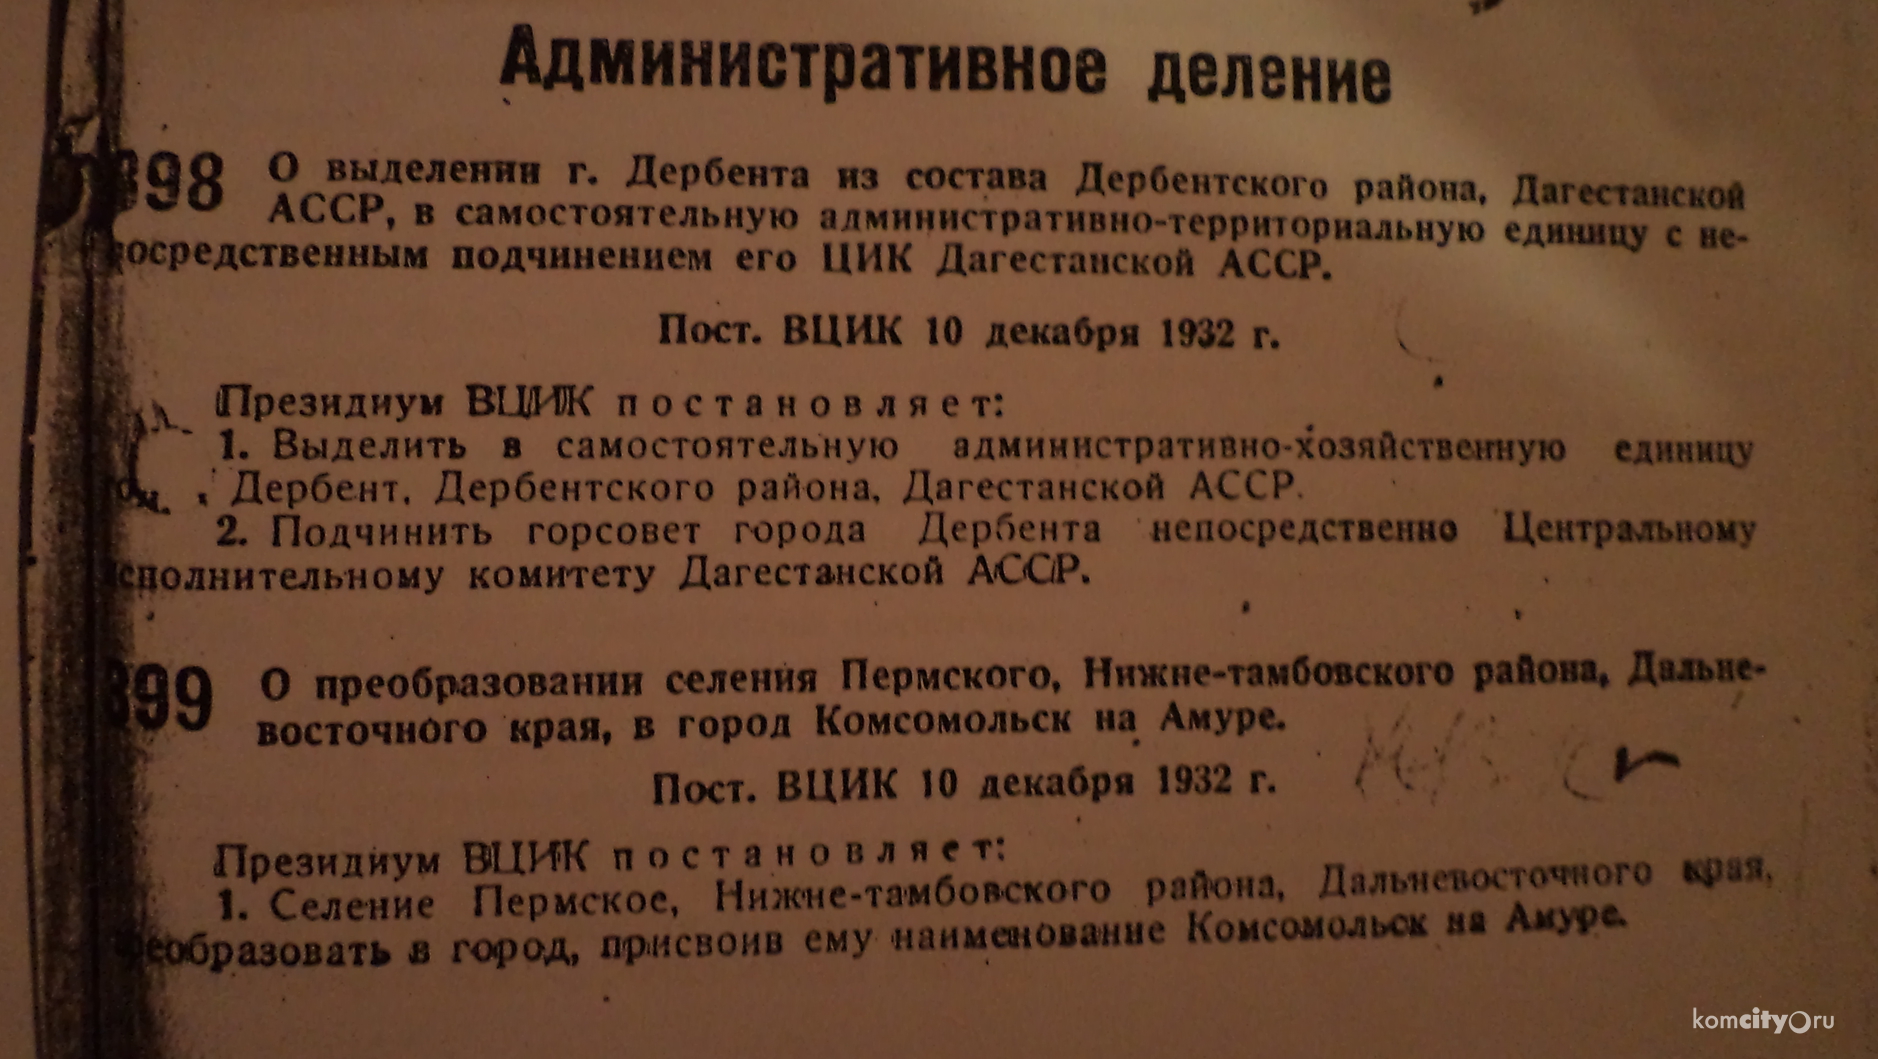 Сегодня, 10 декабря, исполнилось 83 года со дня преобразования селения Пермского в город Комсомольск-на-Амуре